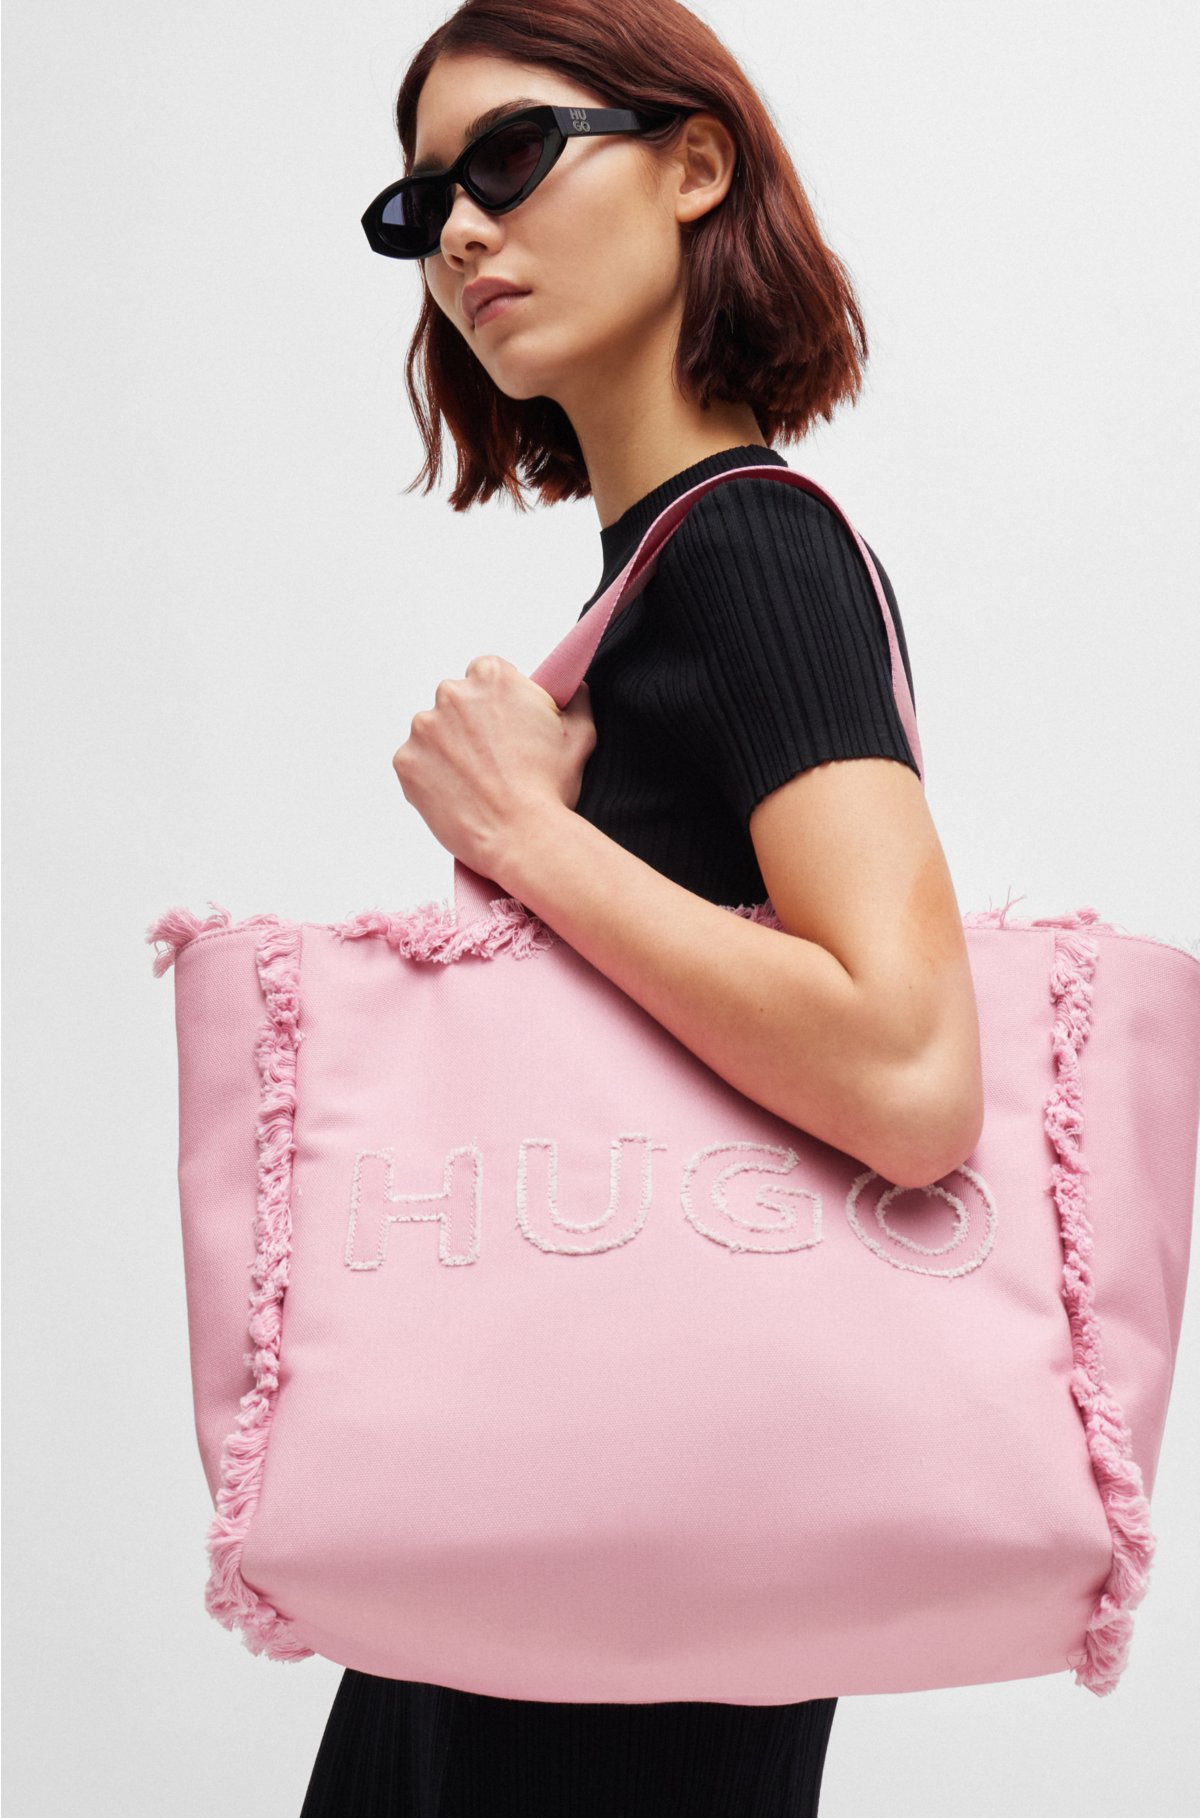 Logo tote bag with fringe detailing, light pink